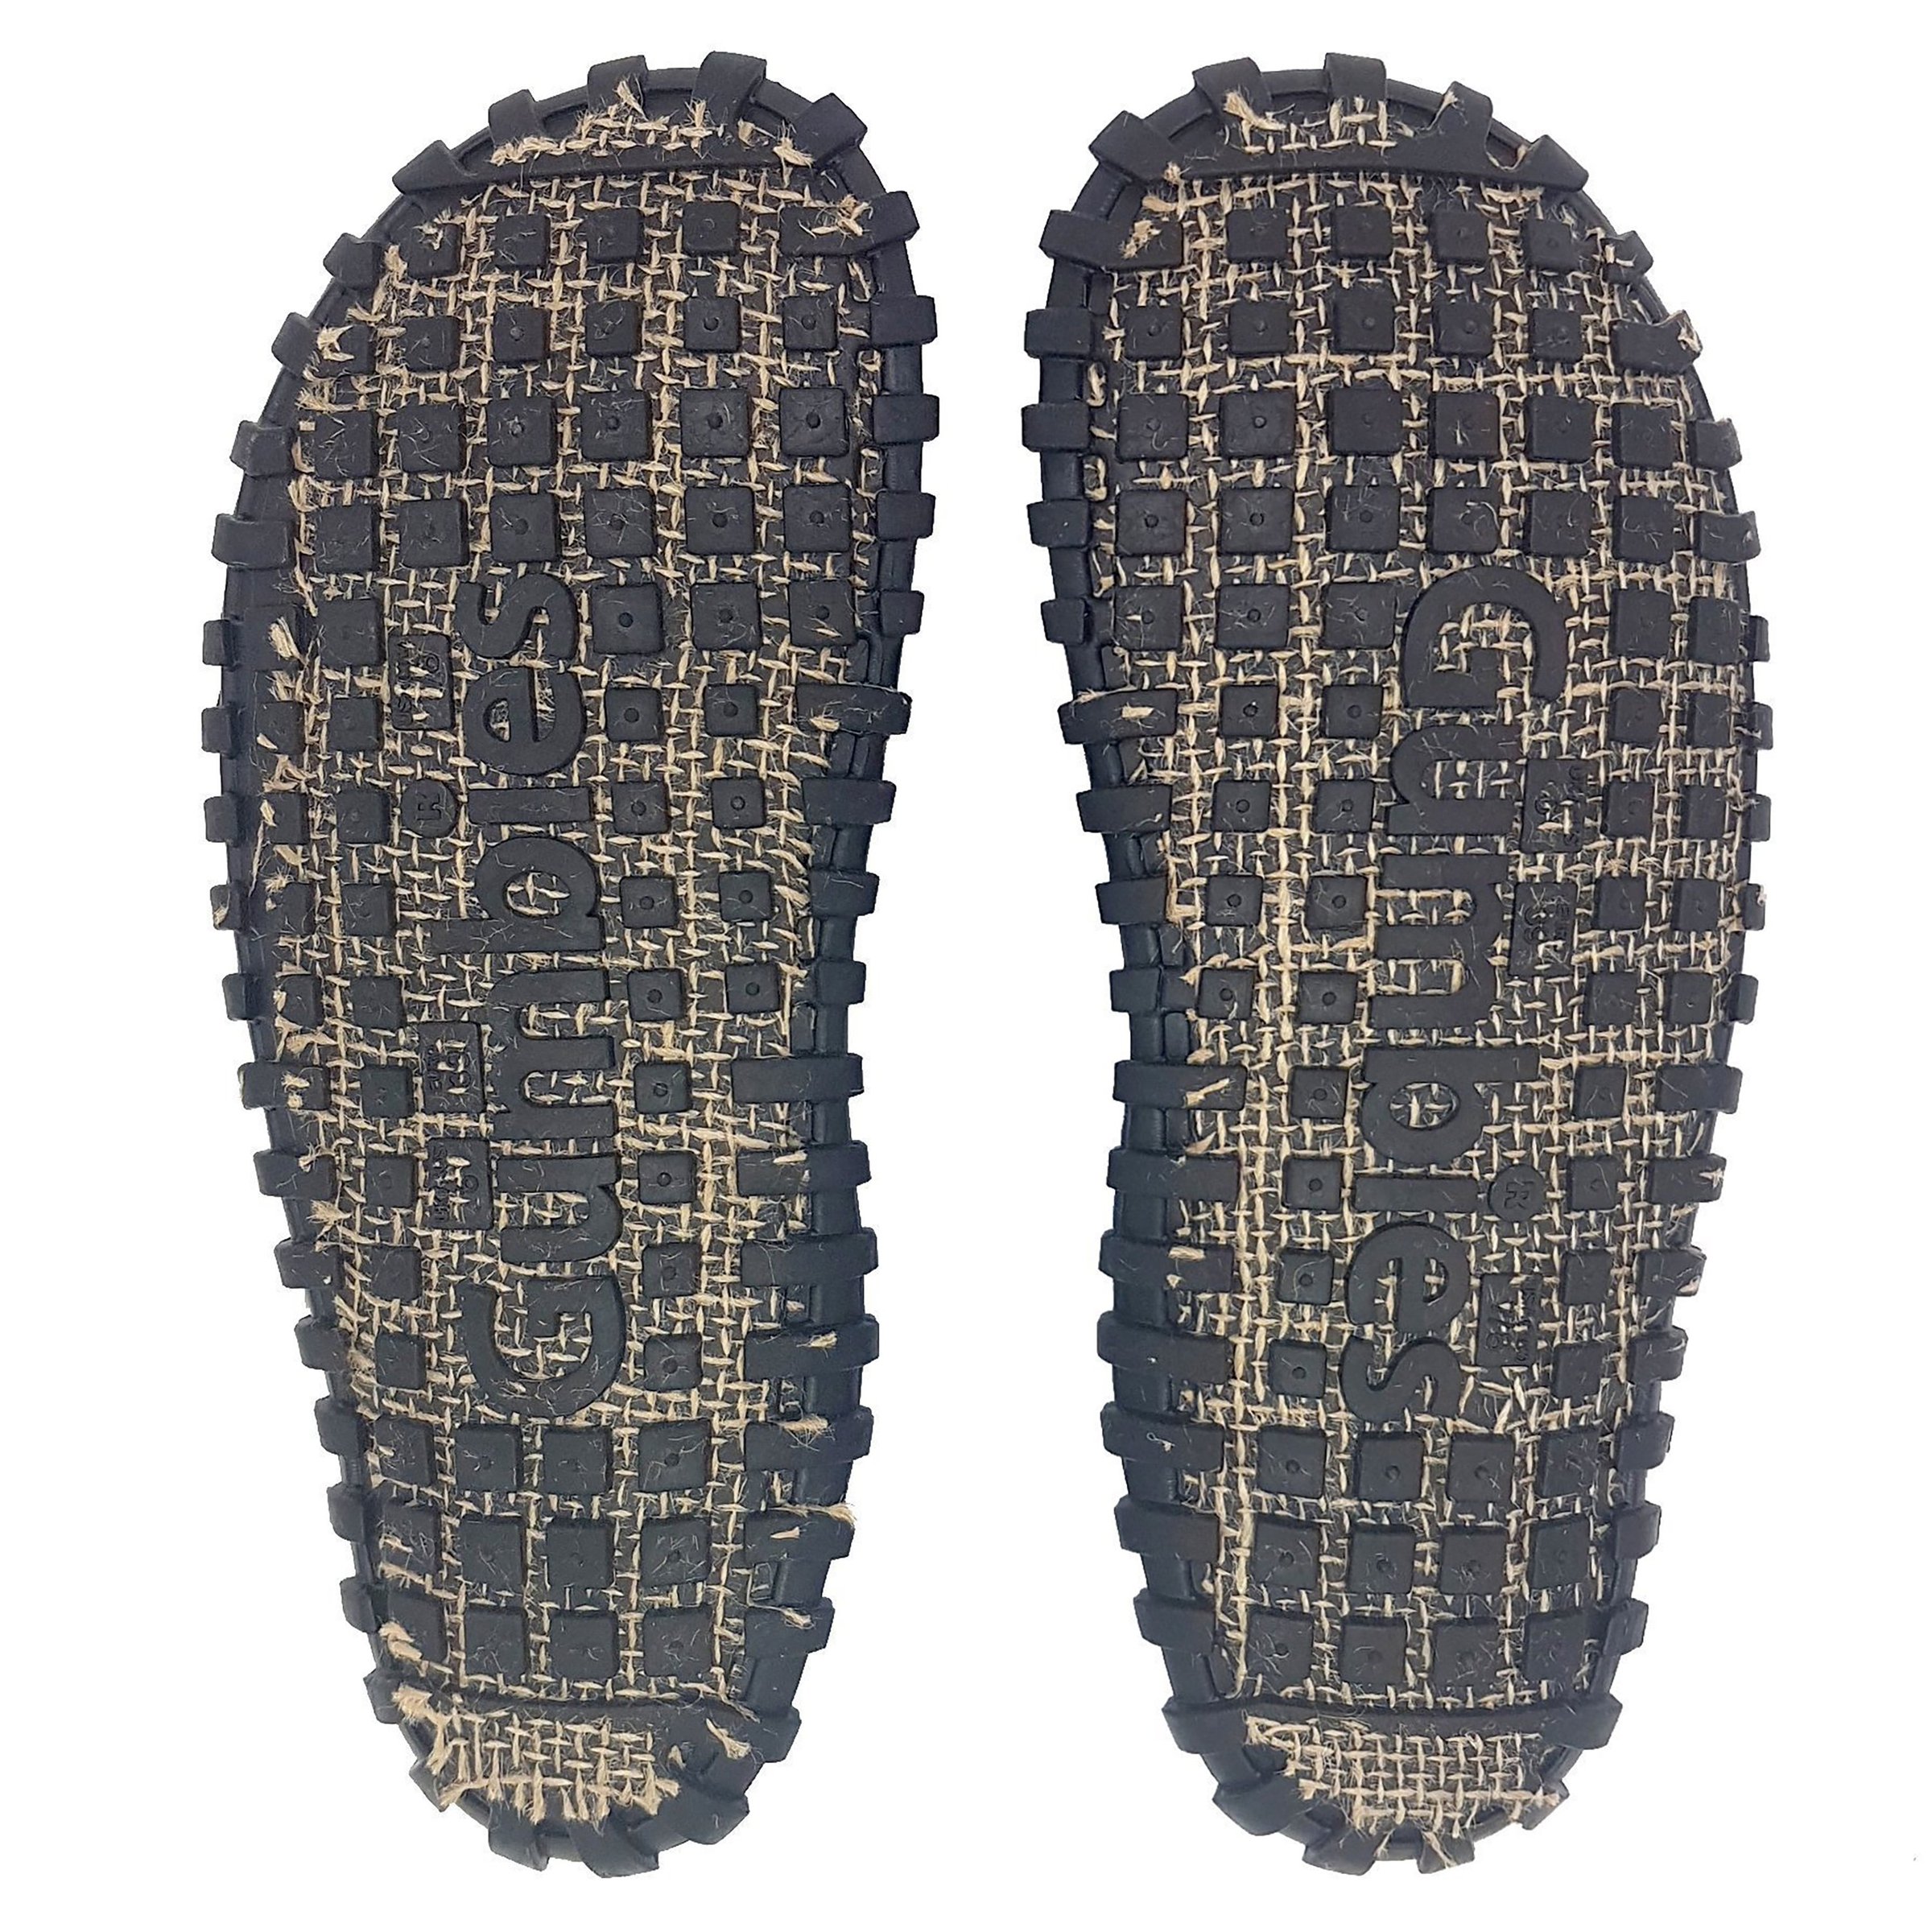 Klapki GUMBIES Islander Canvas gumbies islander black sole 1500_53564607 623d 4dbb afec 9ff730a0e410_2400x